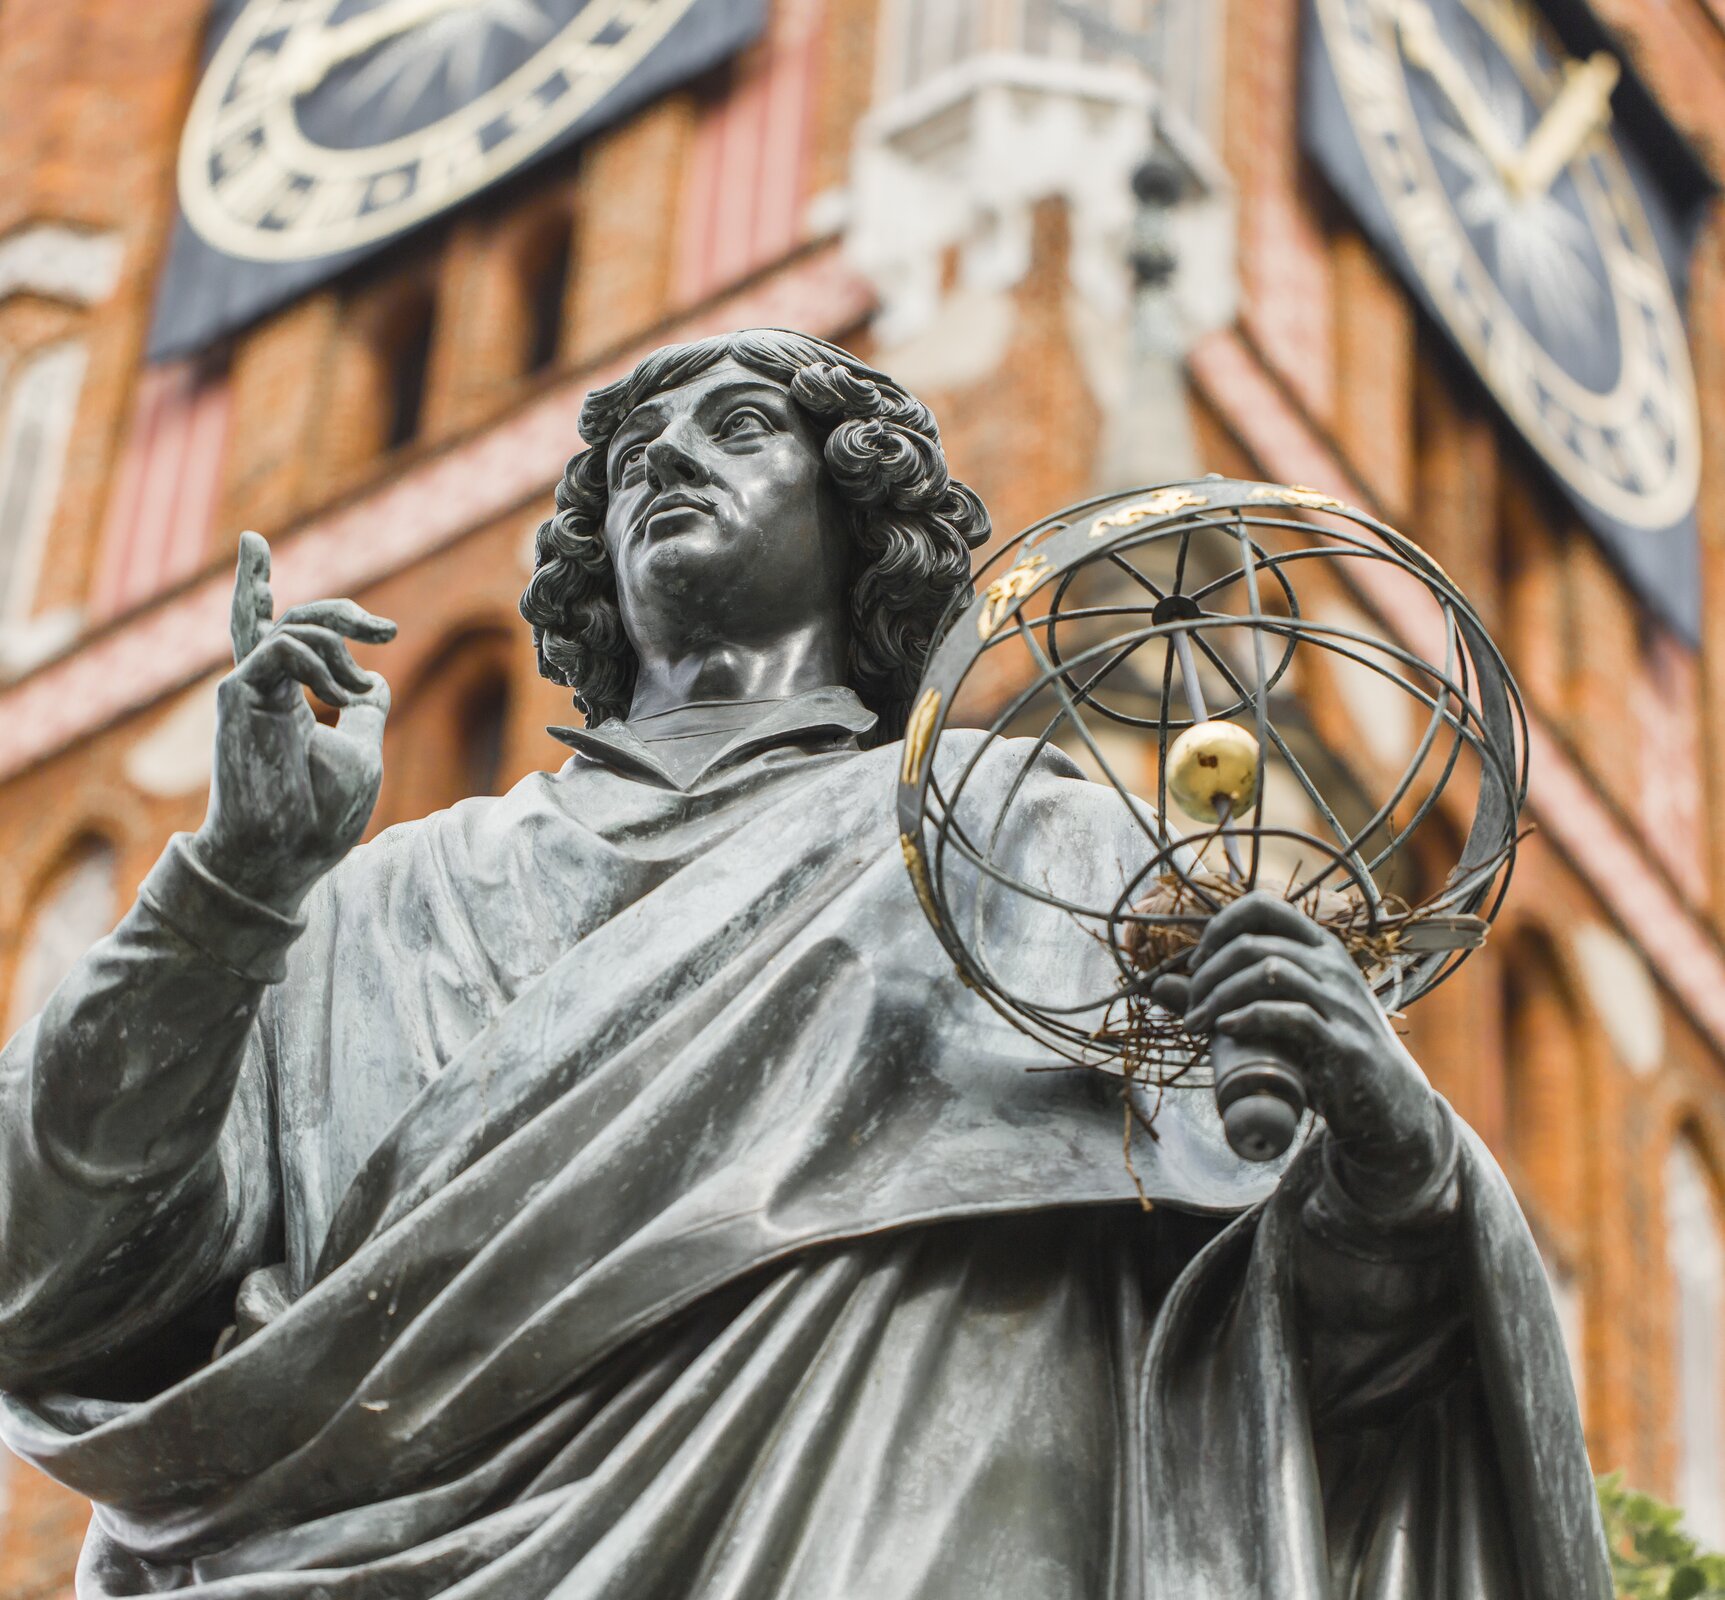 Ilustracja przedstawia fragment pomnika Mikołaja Kopernika znajdującego się w Toruniu. Monument przedstawia Kopernika ubranego w togę uczelnianą, który w lewej ręce trzyma sferę armilarną, a palcem prawej ręki wskazuje niebo. W tle budynek z dużymi dwoma zegarami.